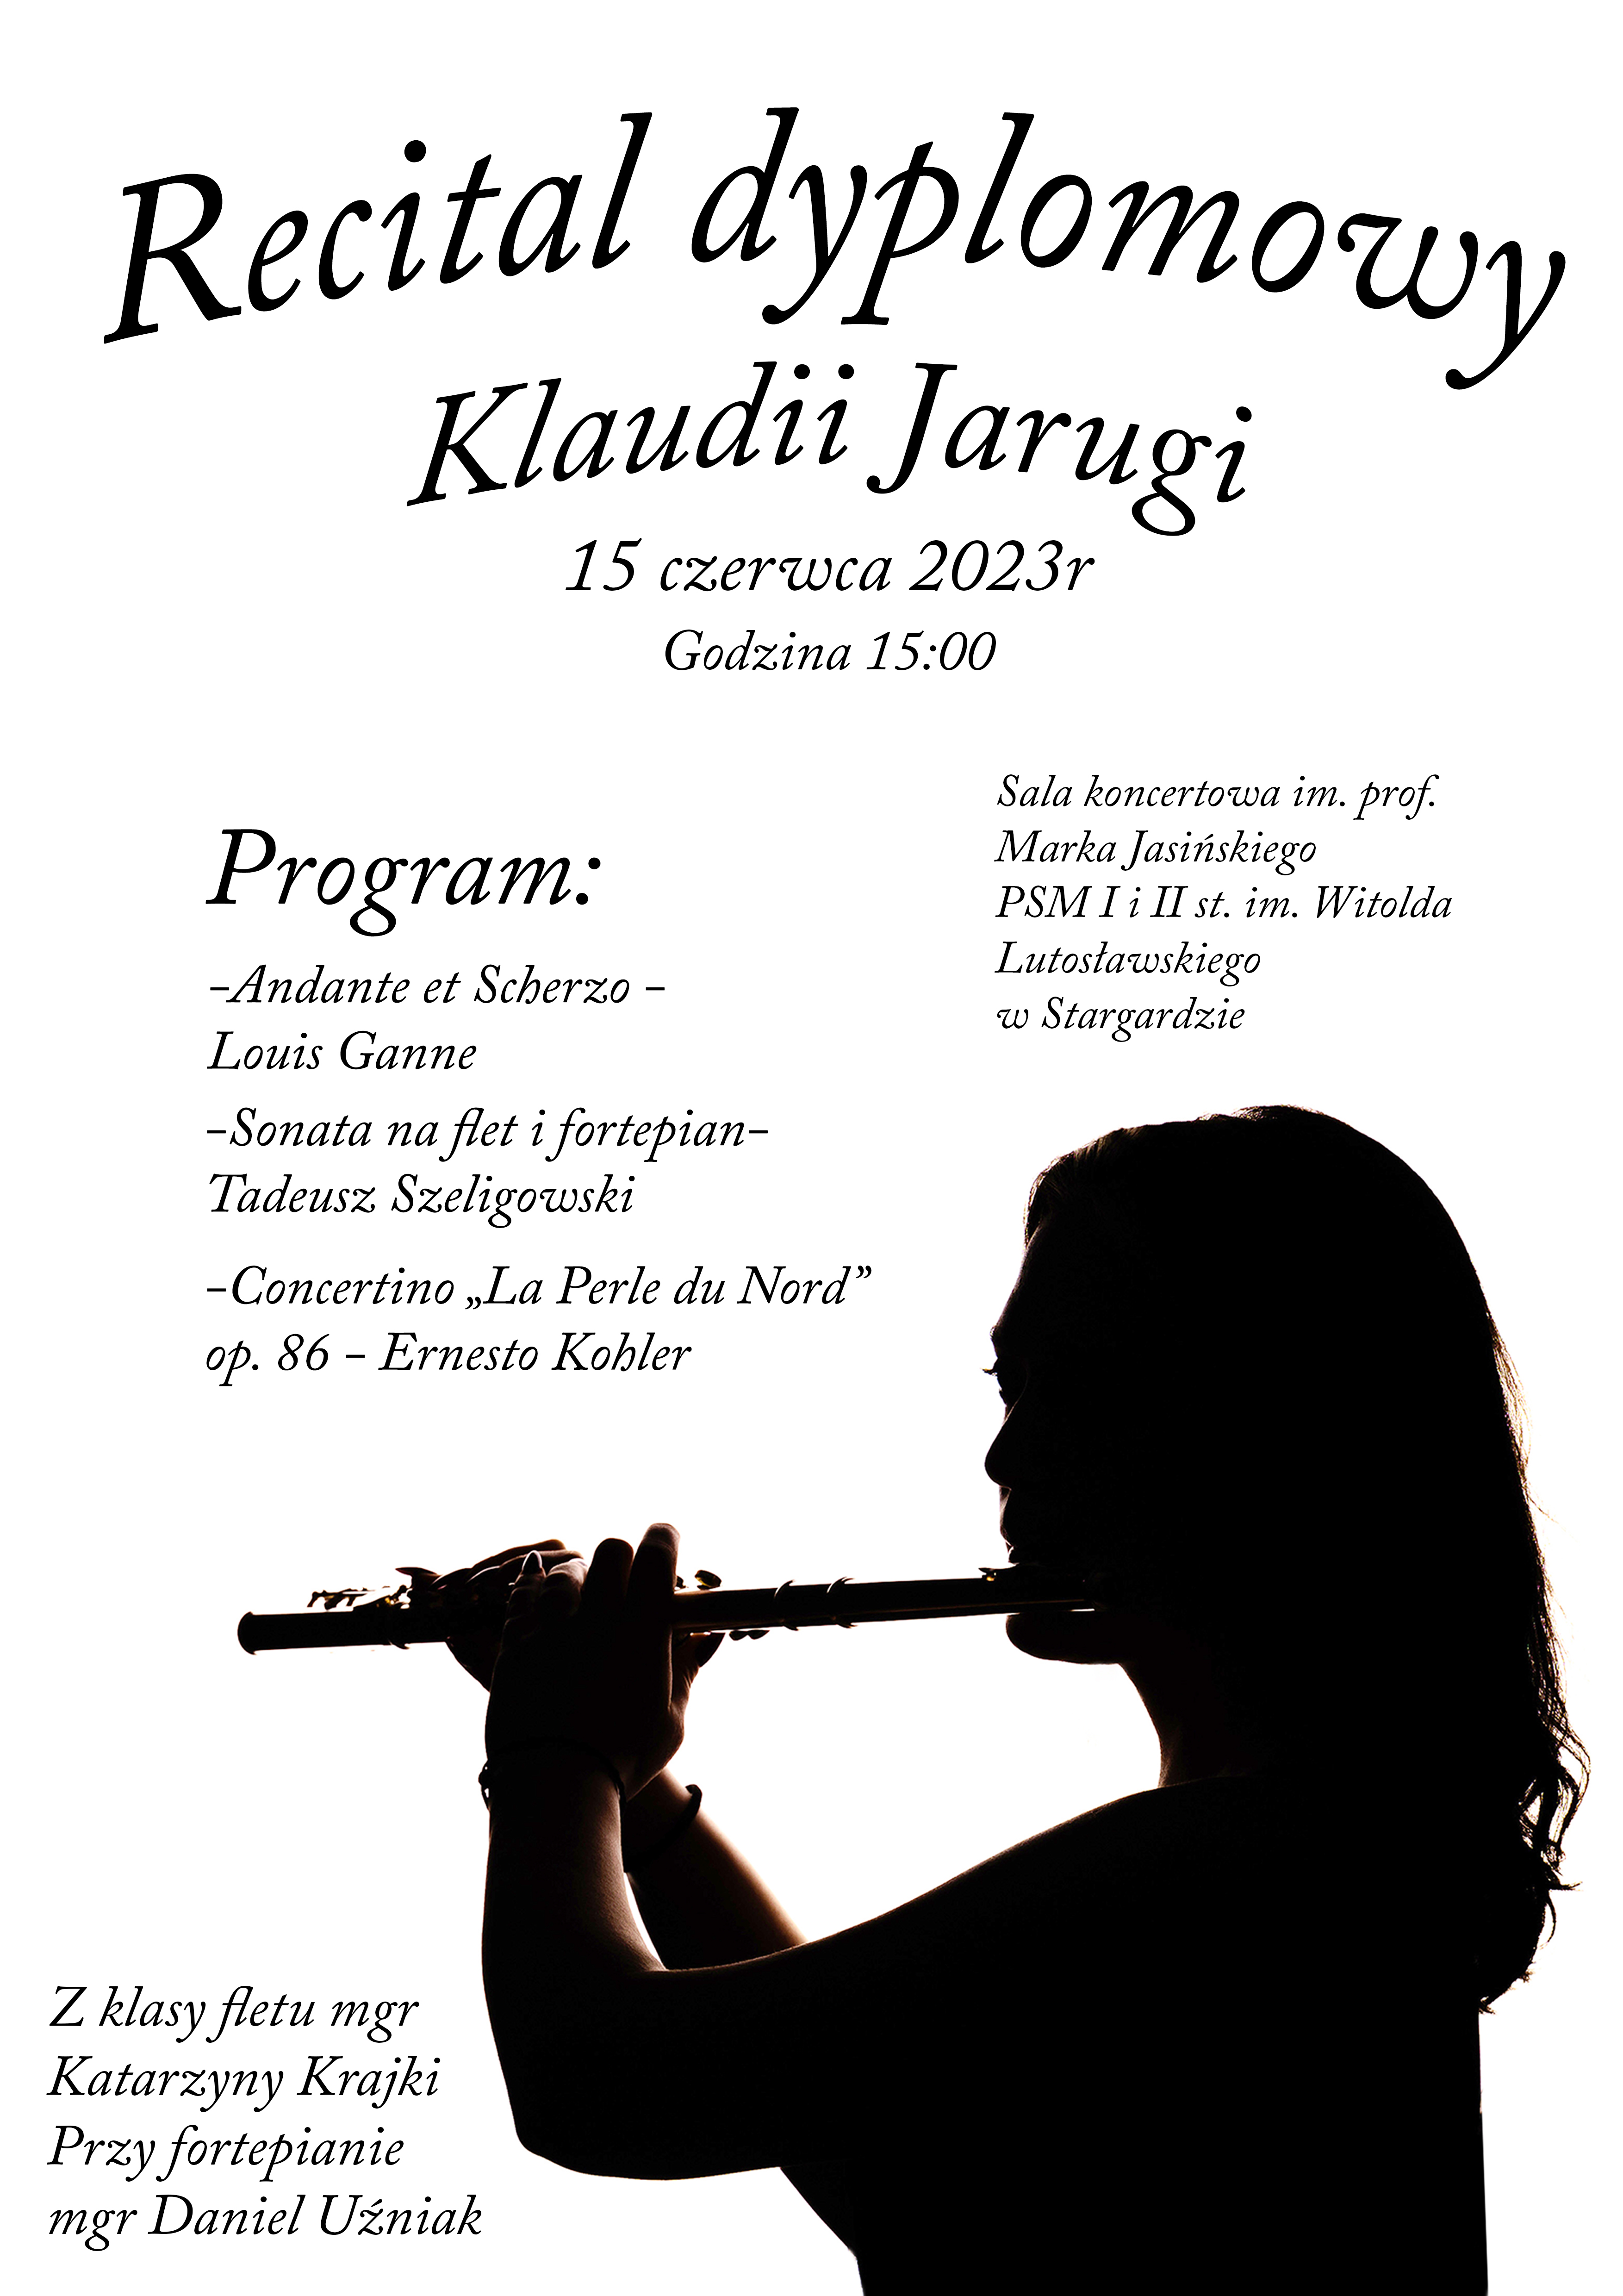 Plakat informujący o recitalu dyplomowym Klaudii Jarugi w dniu 15 czerwca 2023 o godzinie 15.00. Na zdjęciu znajduje się zdjęcie uczennicy grającej na flecie.